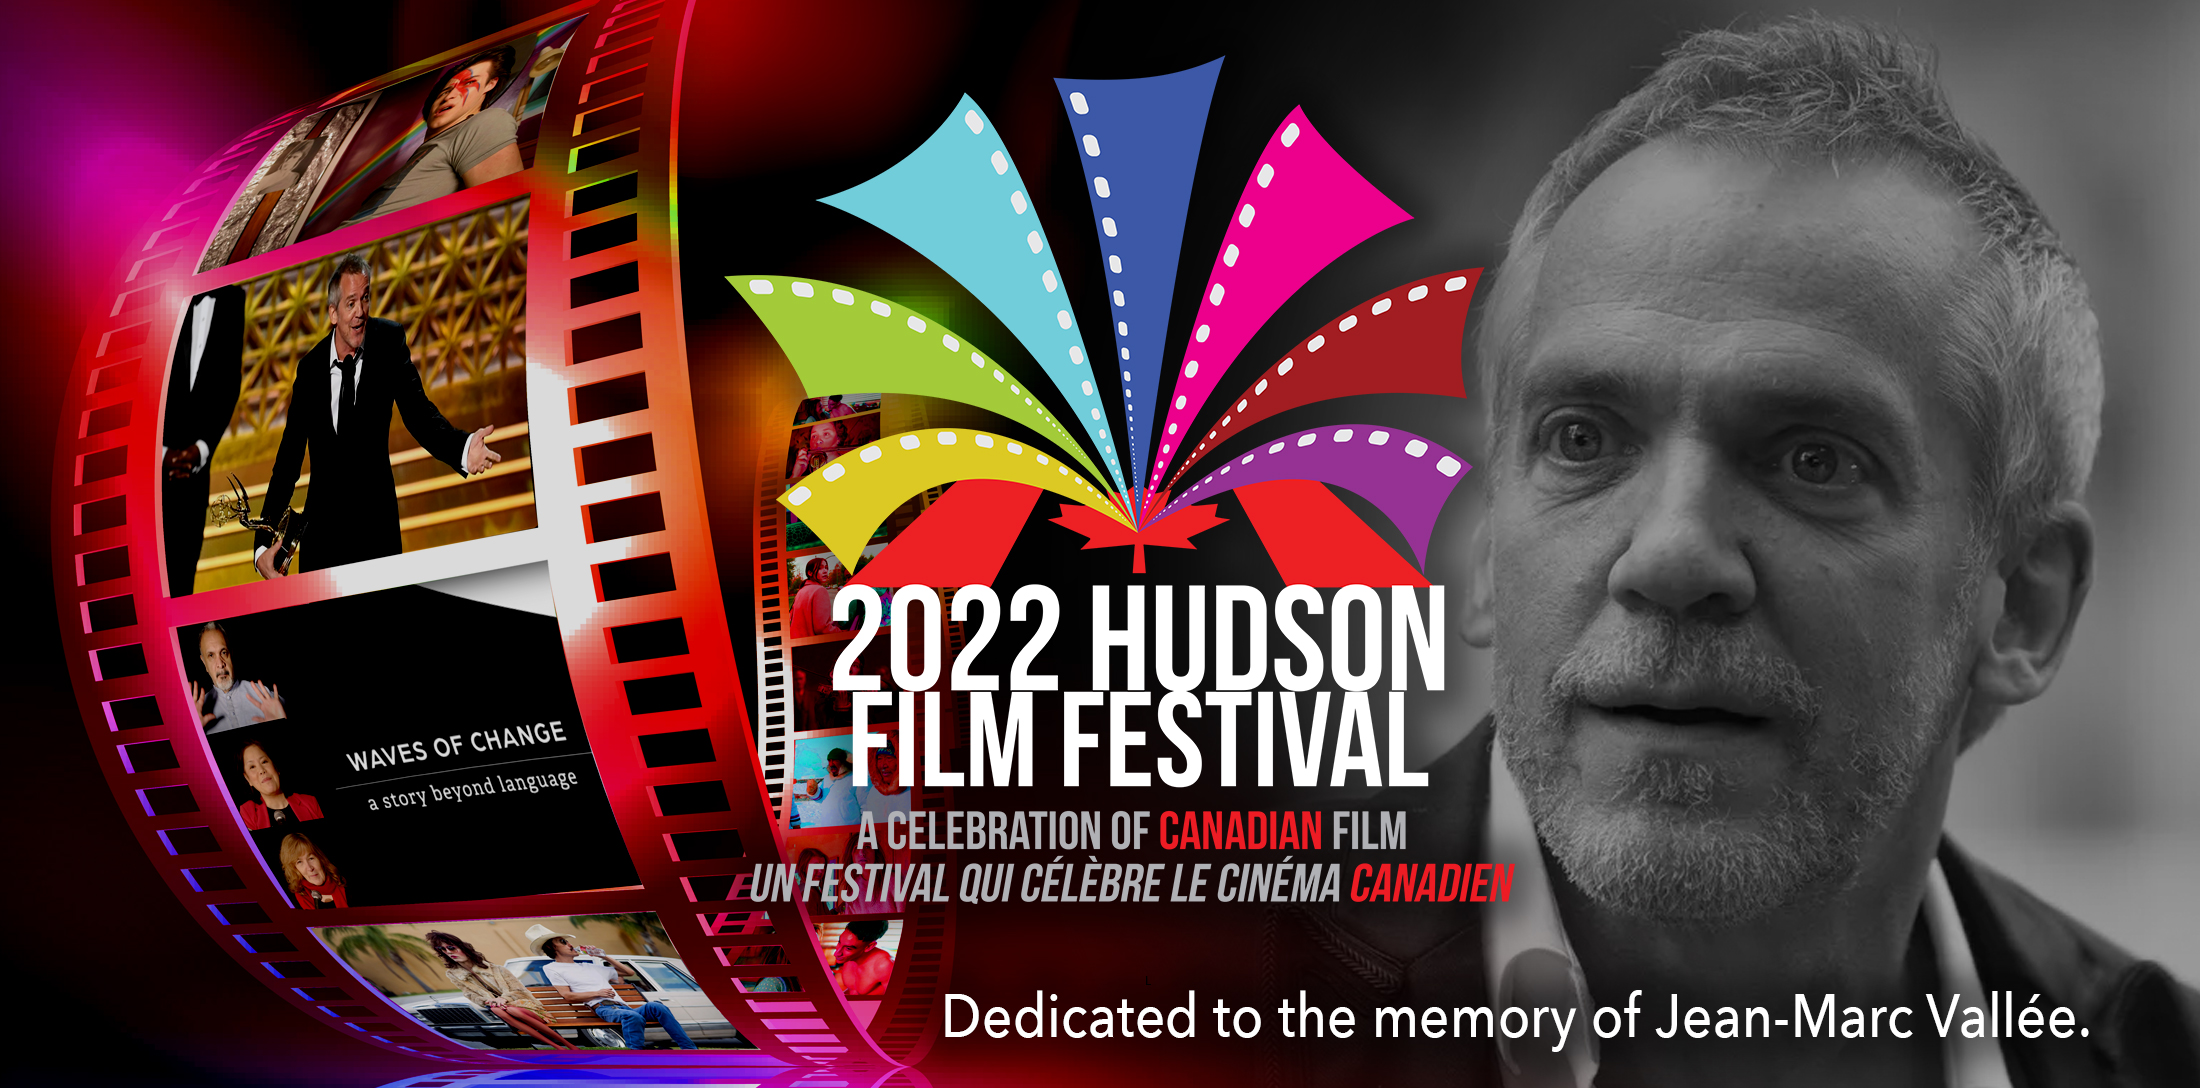 Hudson Film Festival